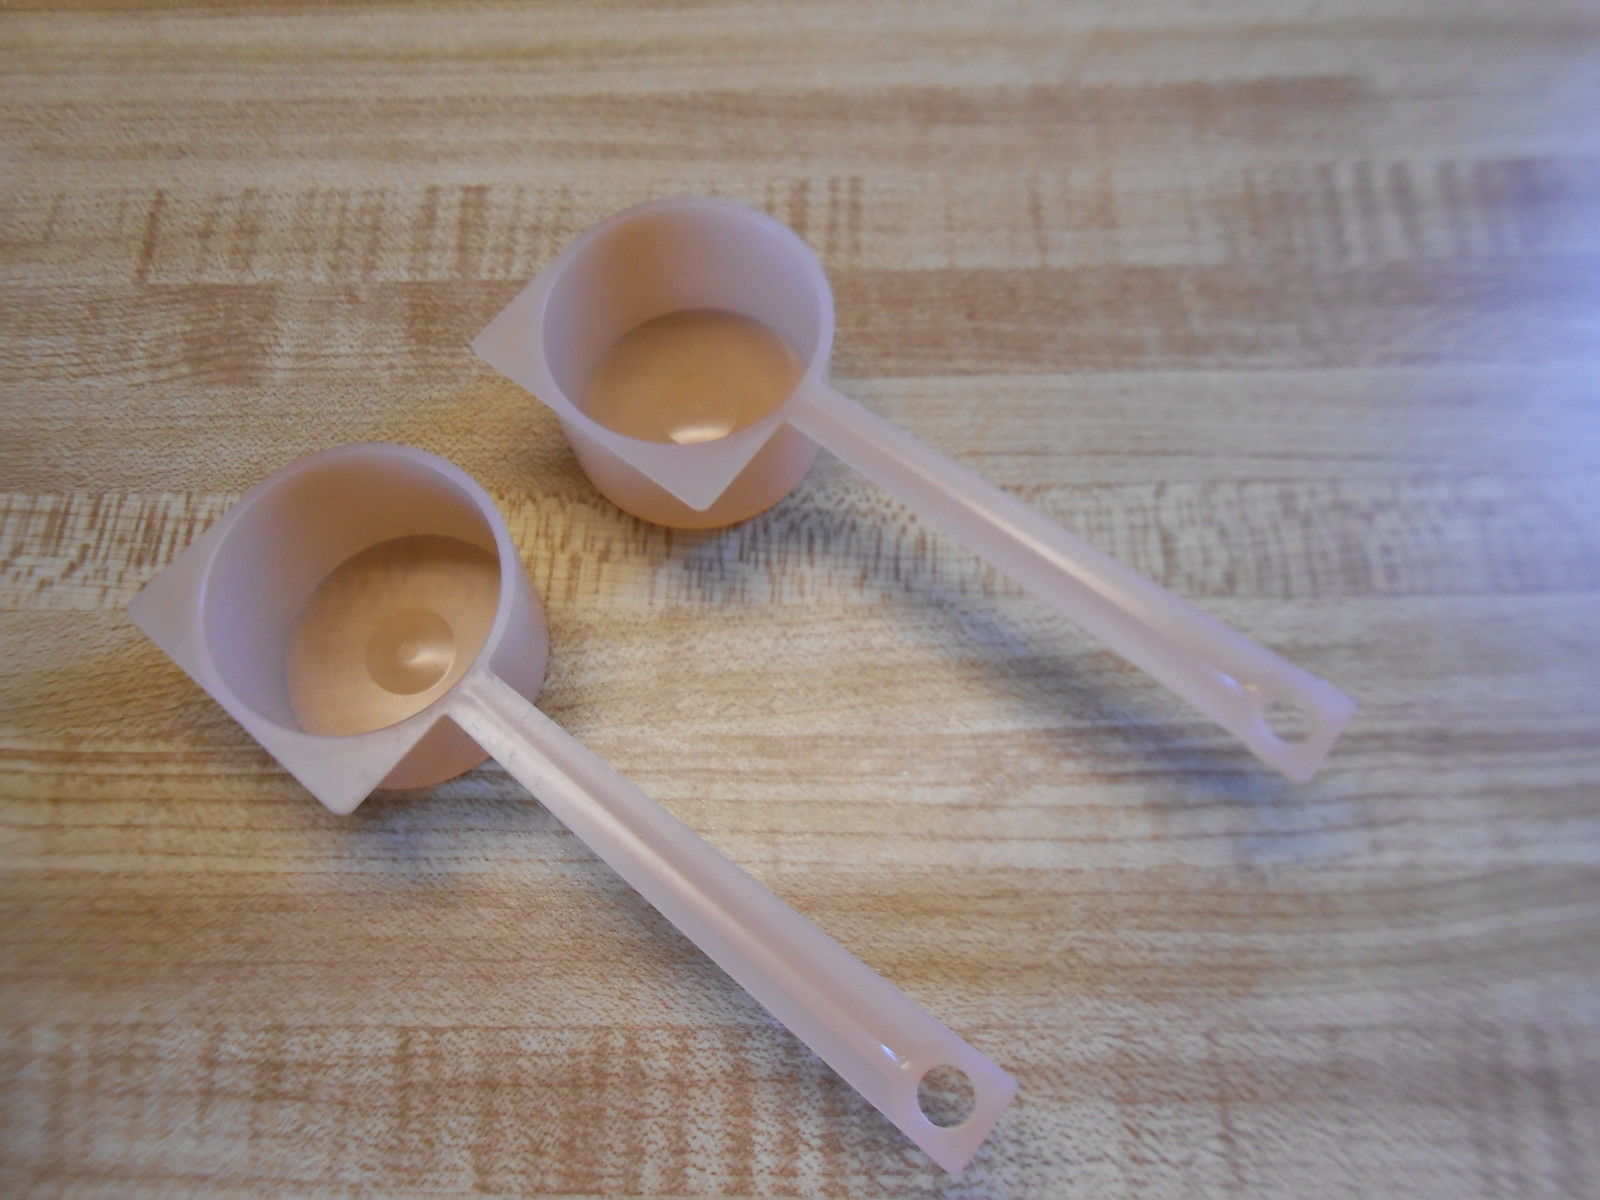  Linwnil Cookie Scoop Set - Small/1 Tablespoon, Medium